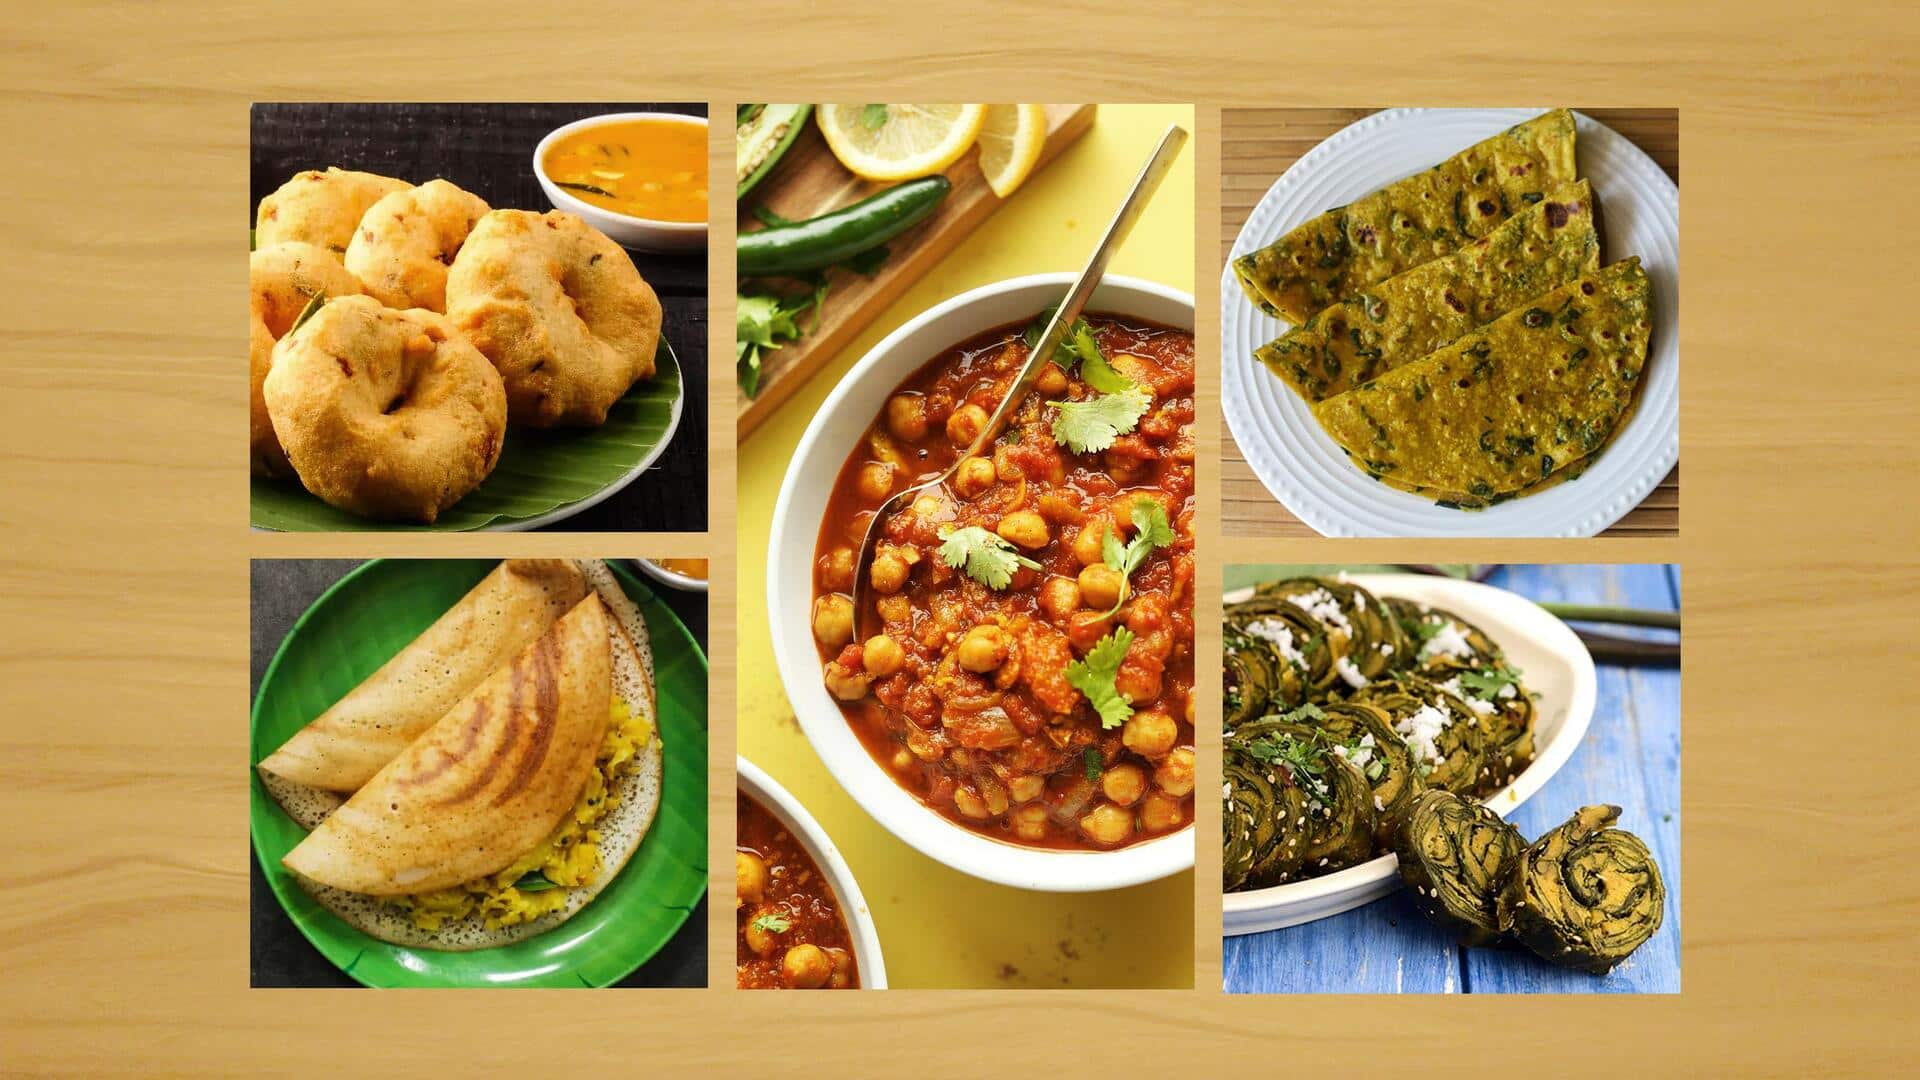 मेहमान आने वाले हैं तो घर पर बनाएं ये 5 भारतीय व्यंजन, आसान है इनकी रेसिपी 